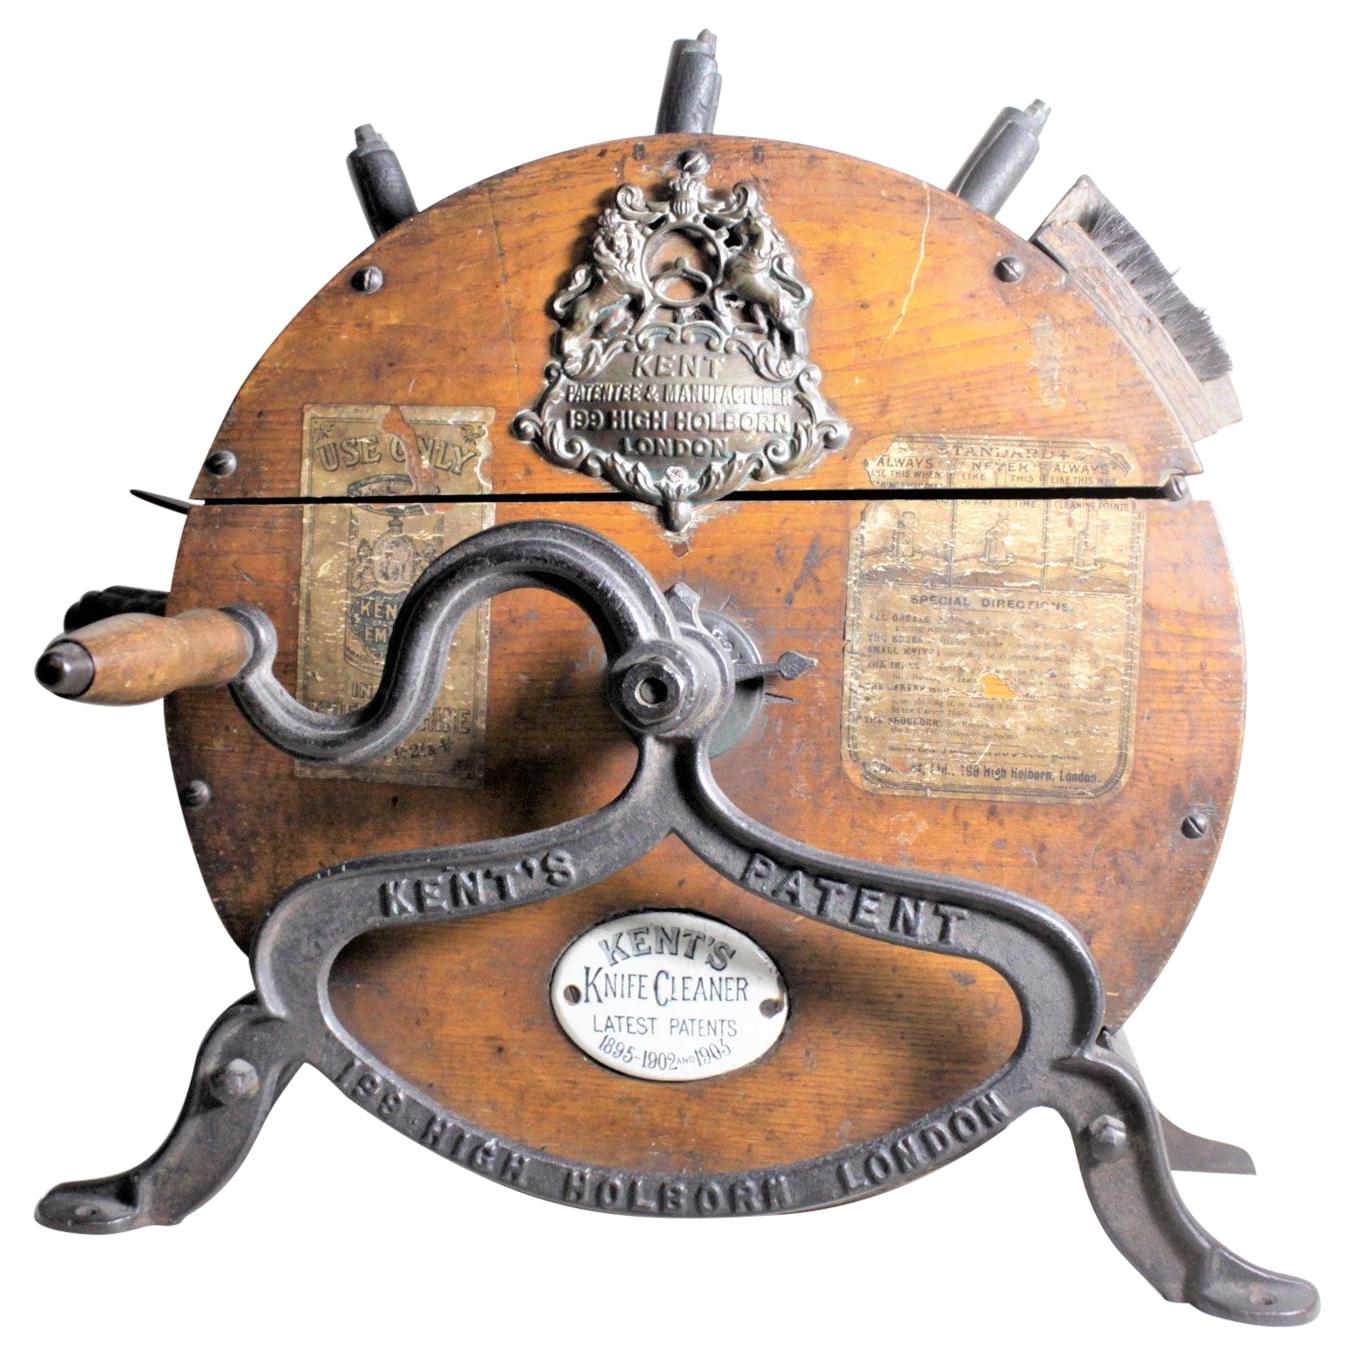 Antikes Kent's Knife Cleaning, Polishing & Sharpening Wheel mit Original Etiketten